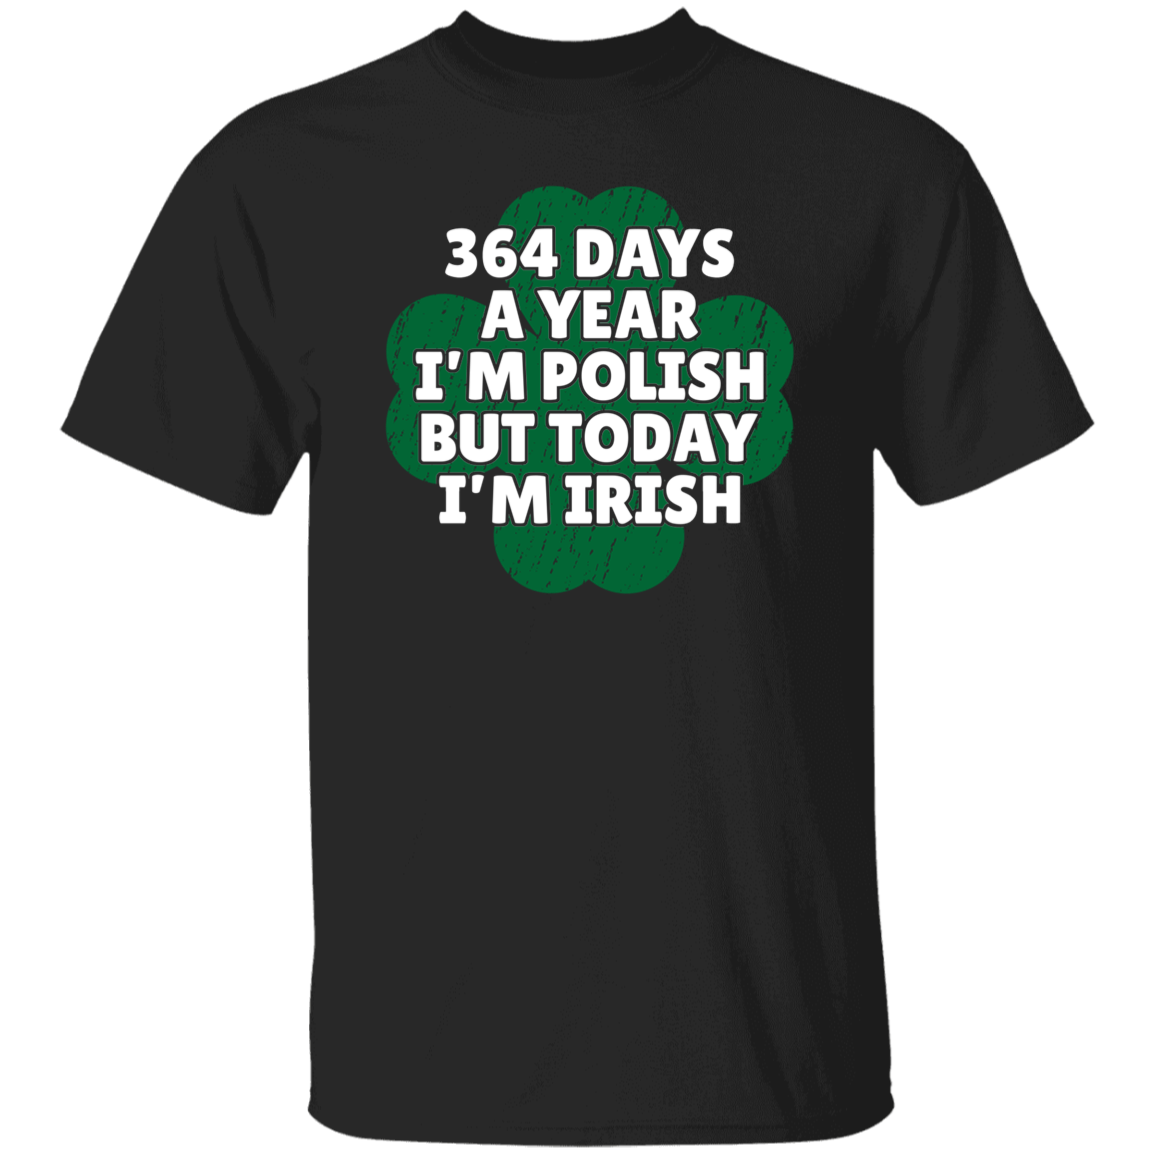 364 Days a Year I'm Polish, But Today I'm Irish Apparel CustomCat G500 5.3 oz. T-Shirt Black S